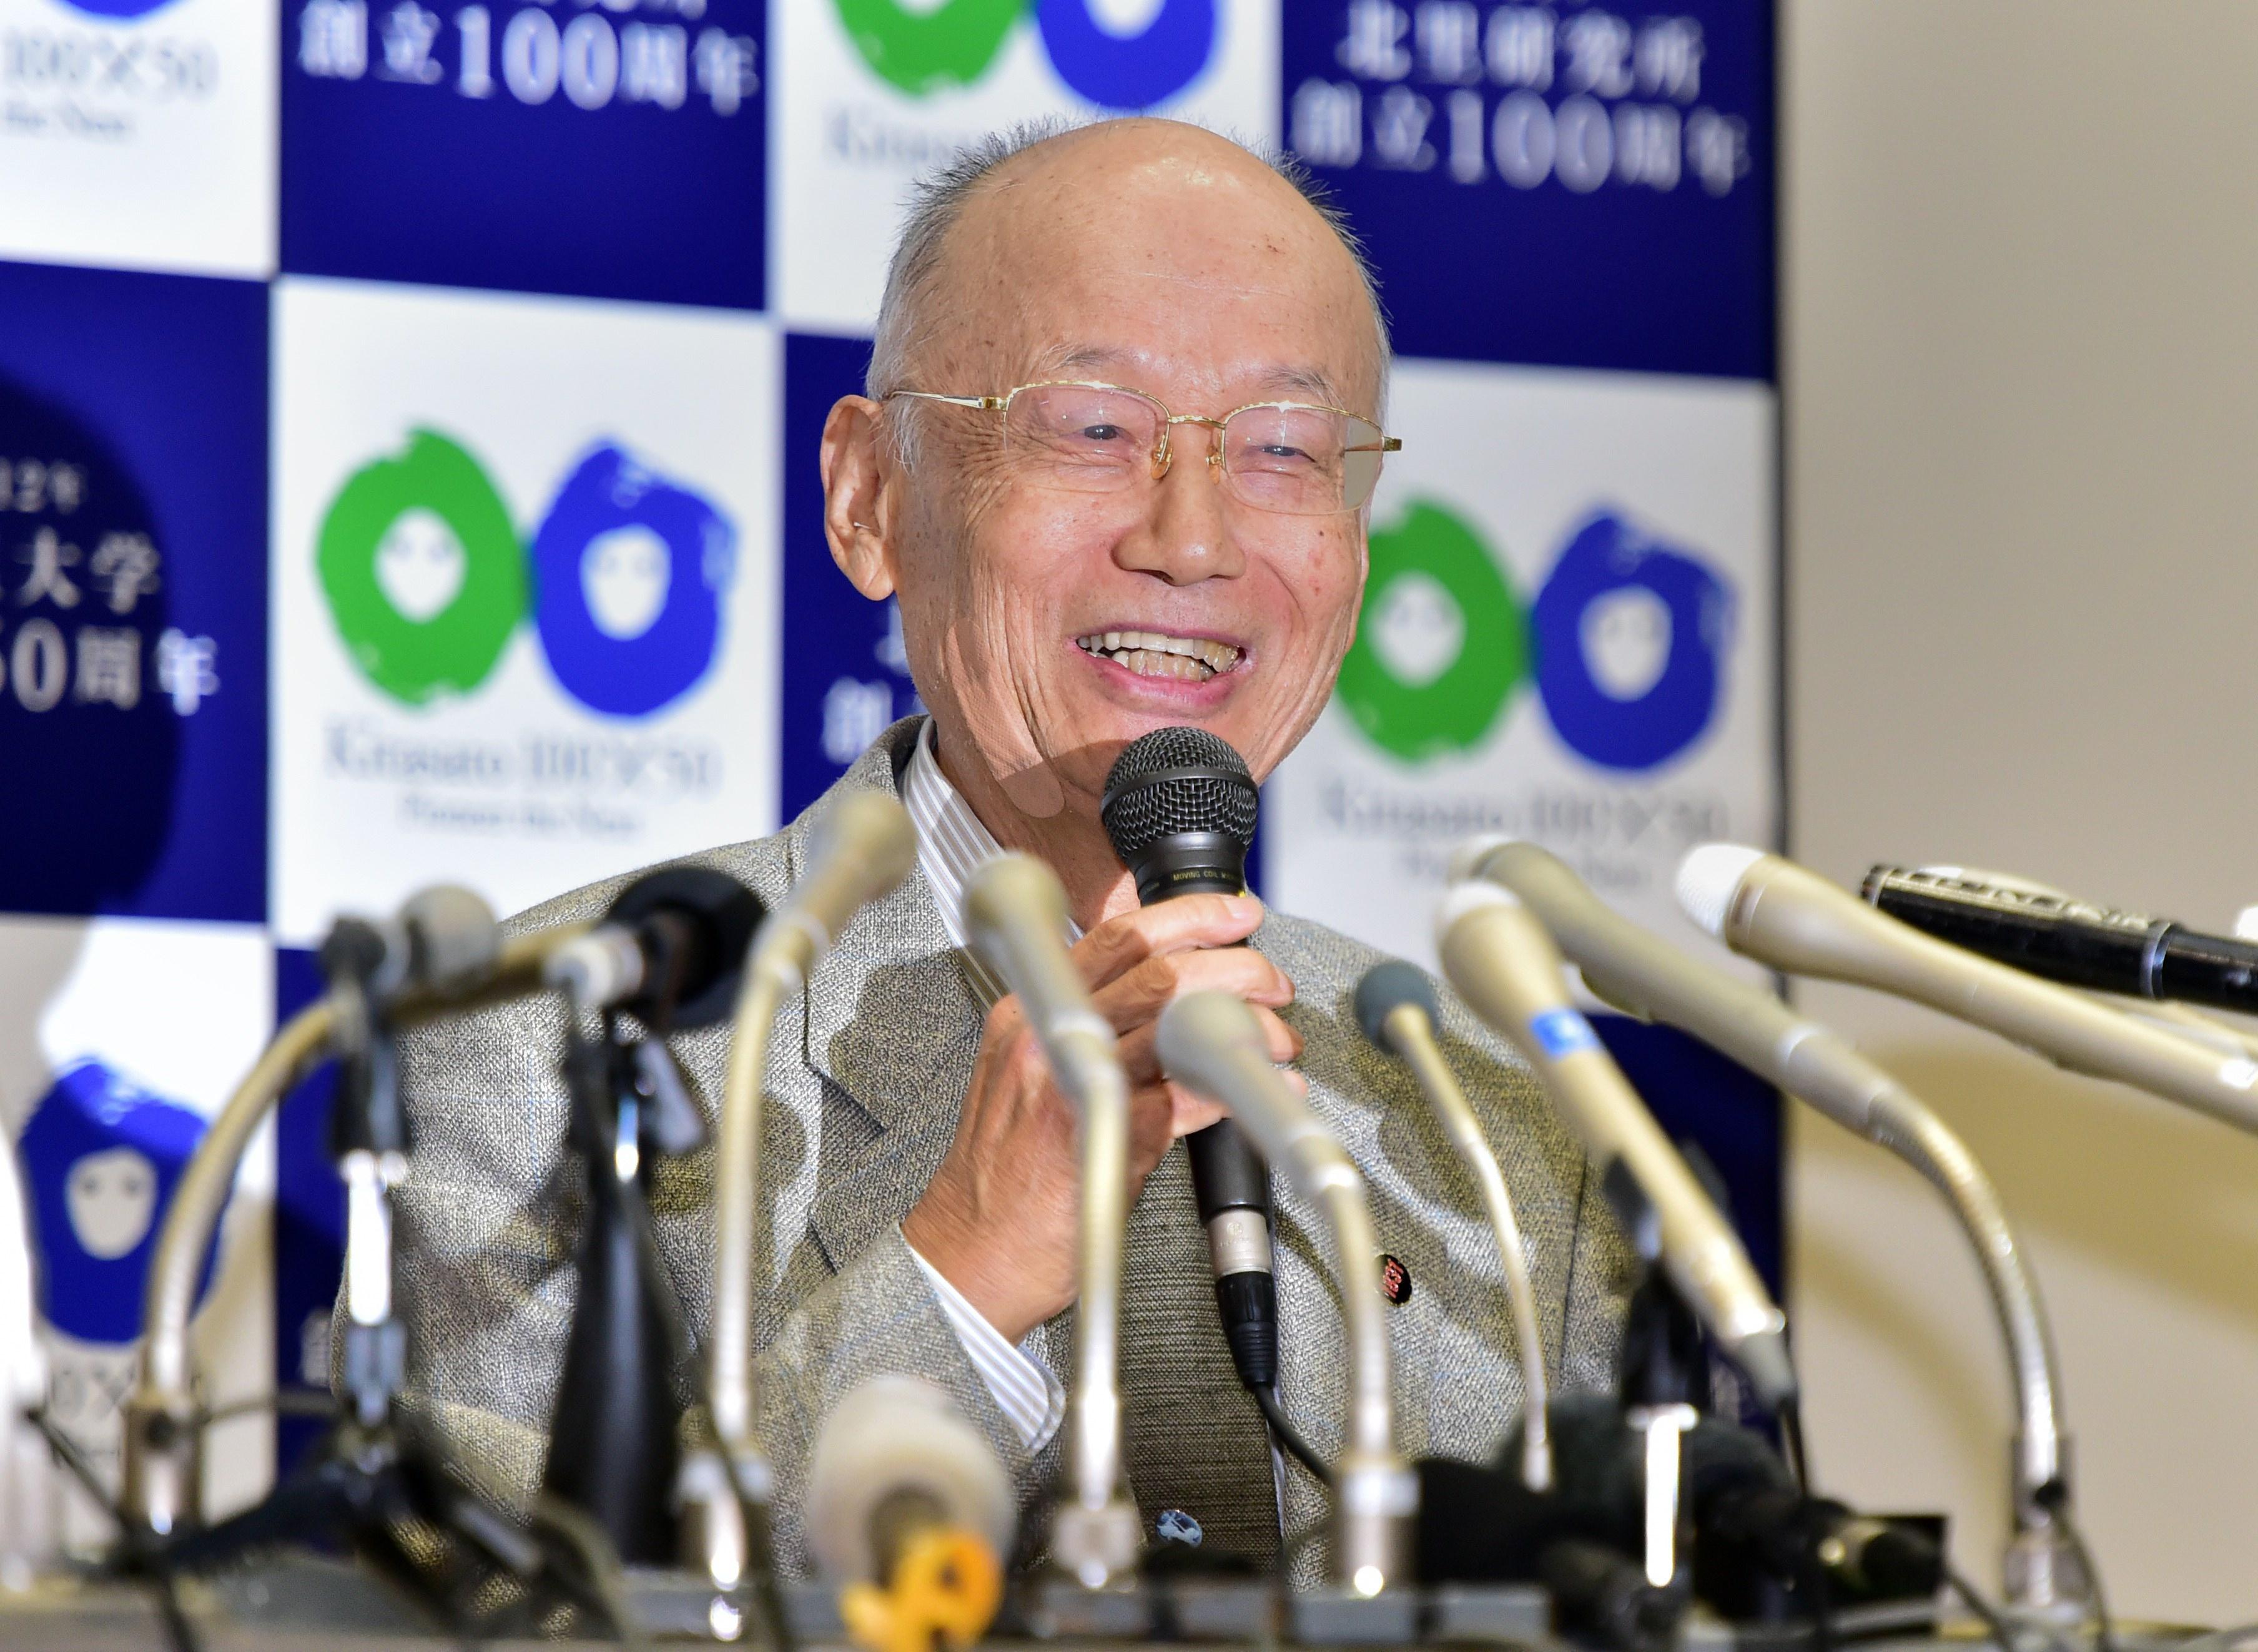 Satoshi Omura, professor på Kitasato University, talar på en presskonferens på Kitasato University i Tokyo, efter att ha tilldelats halva Nobelpriset i medicin tillsammans med William Campbell, 5 oktober 2015. (Foto: Yoshikatsu Tsuno/AFP/Getty Images)  